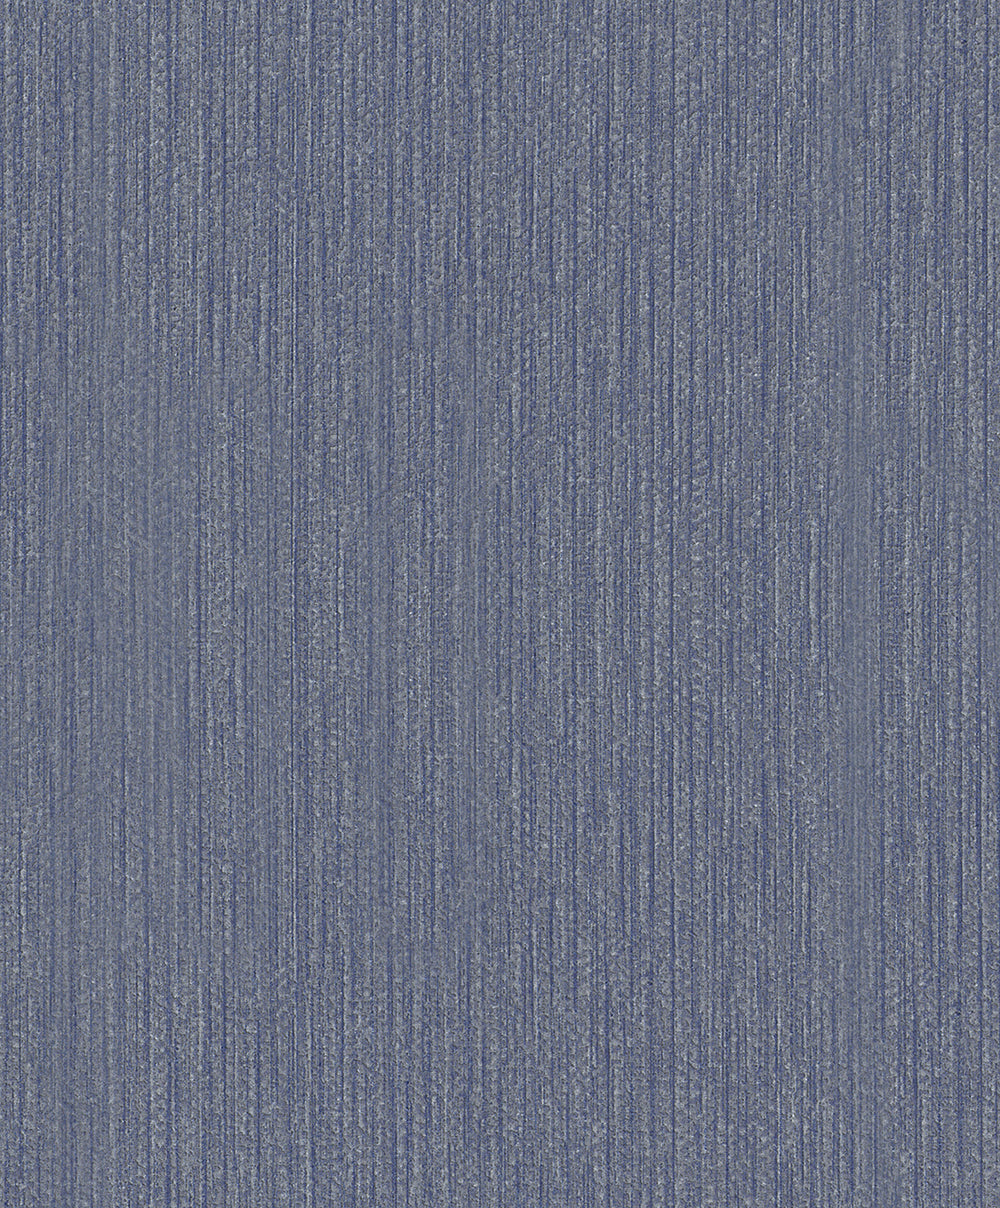 Schoner Wohnen New Spirit - Ambient bamboo weave plain wallpaper Marburg Roll Dark Blue  32741